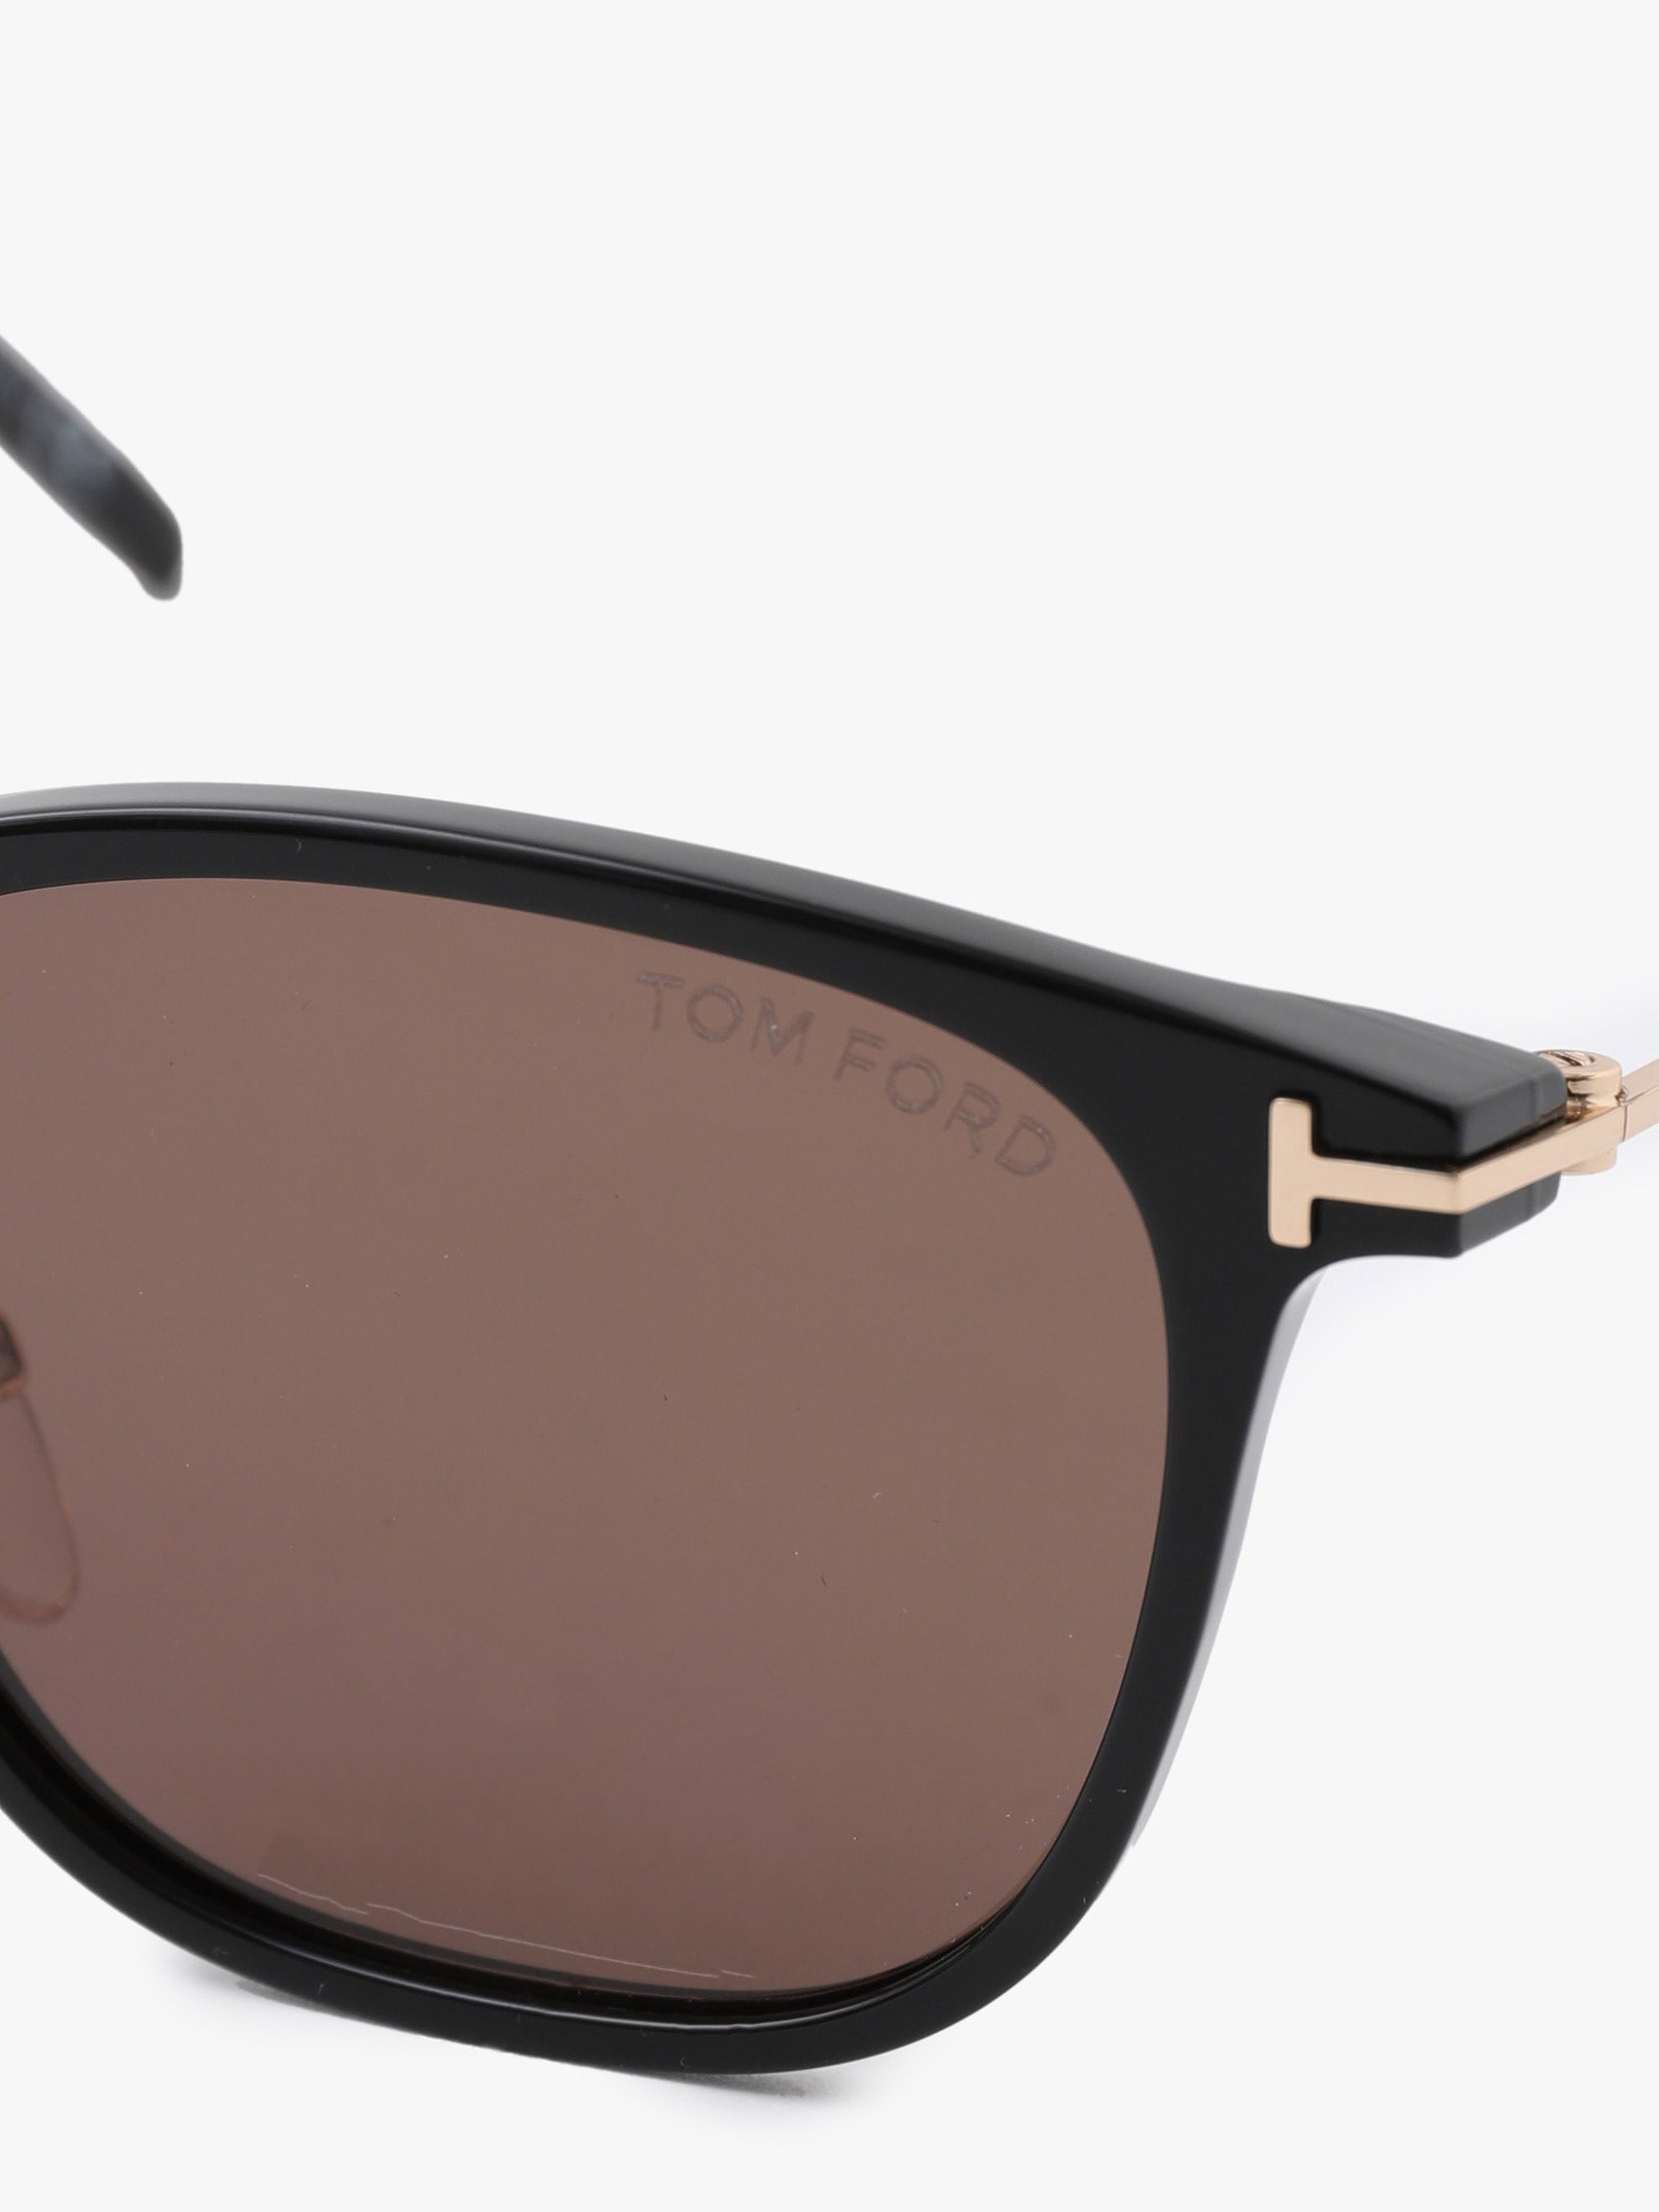 Sunglasses (FT0672)｜TOM FORD(トム フォード)｜Ron Herman